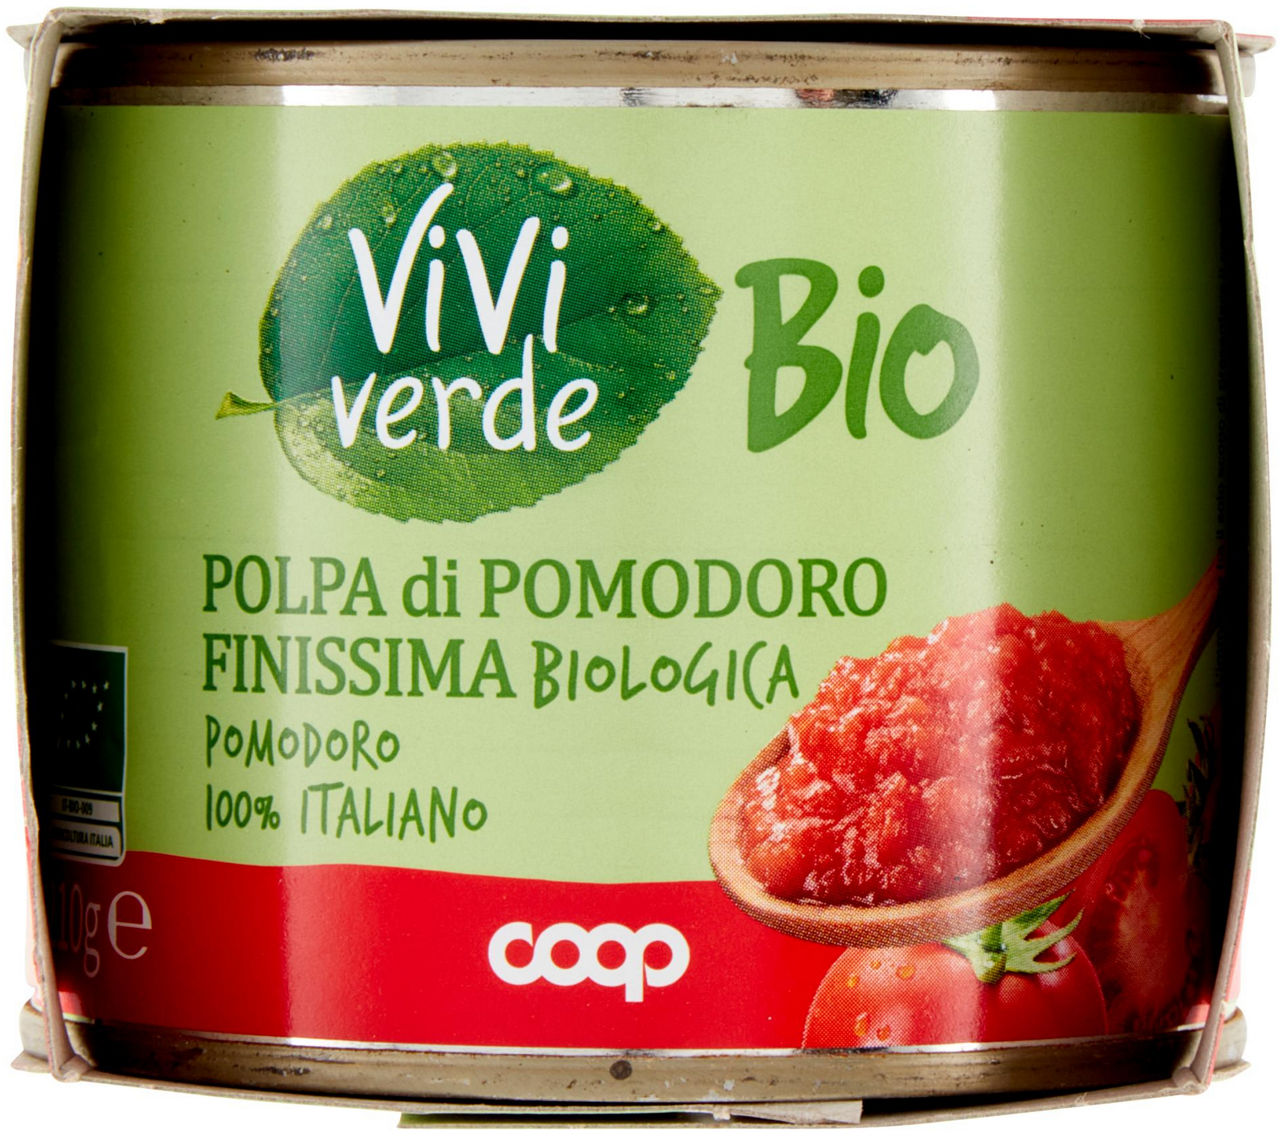 POLPA Pumodoro Finissima Biologico Vivi Verde 2X210 G - 3